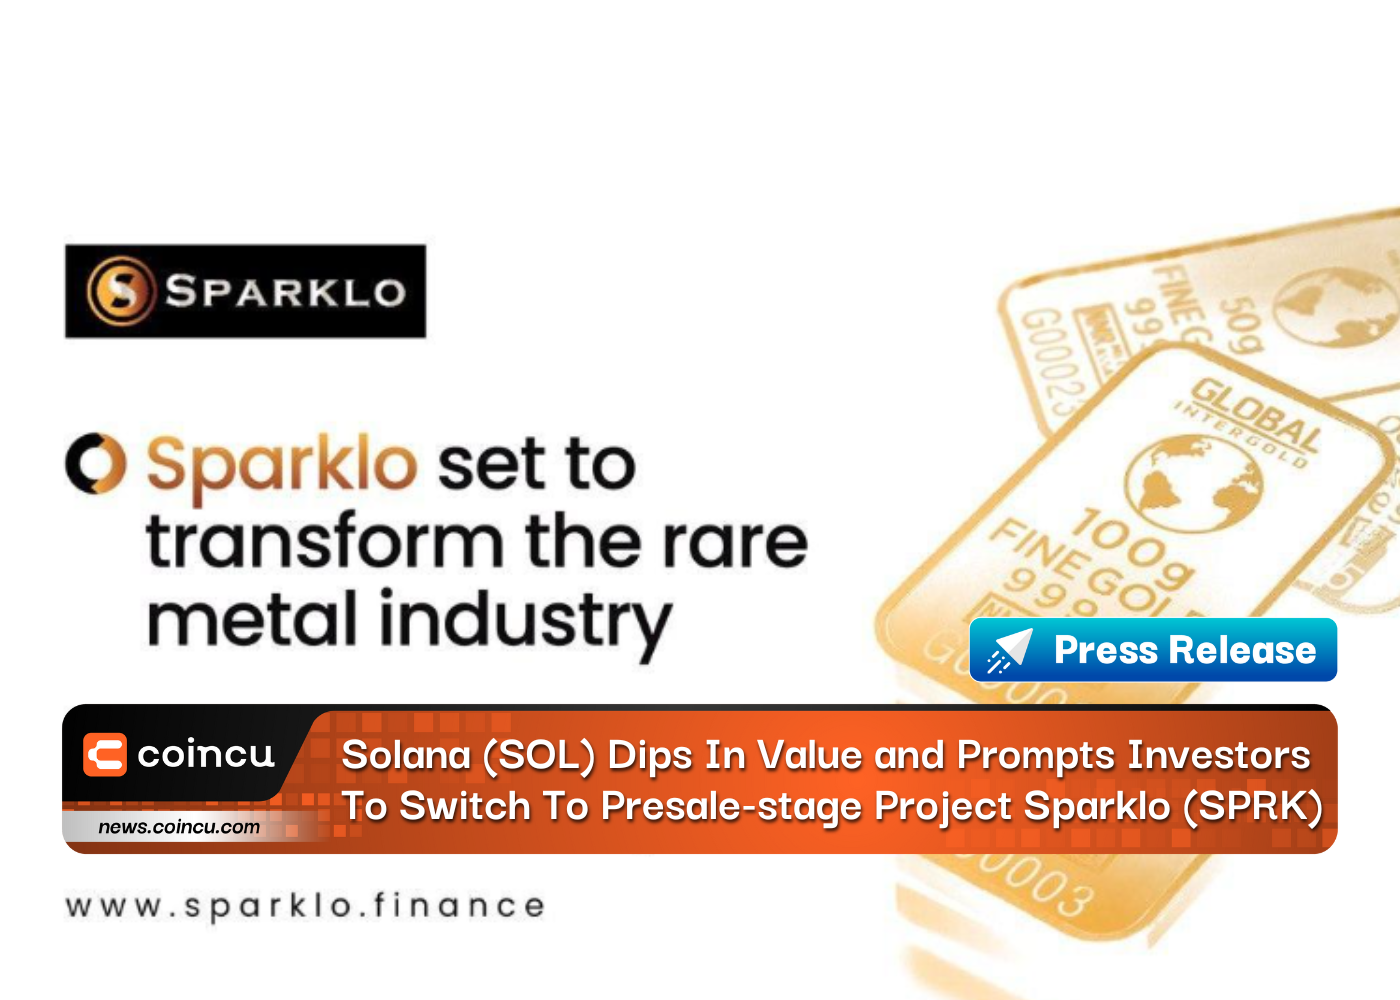 ソラナ (SOL) の価値が急落し、投資家にプレセール段階のプロジェクト Sparklo (SPRK) への切り替えを促す